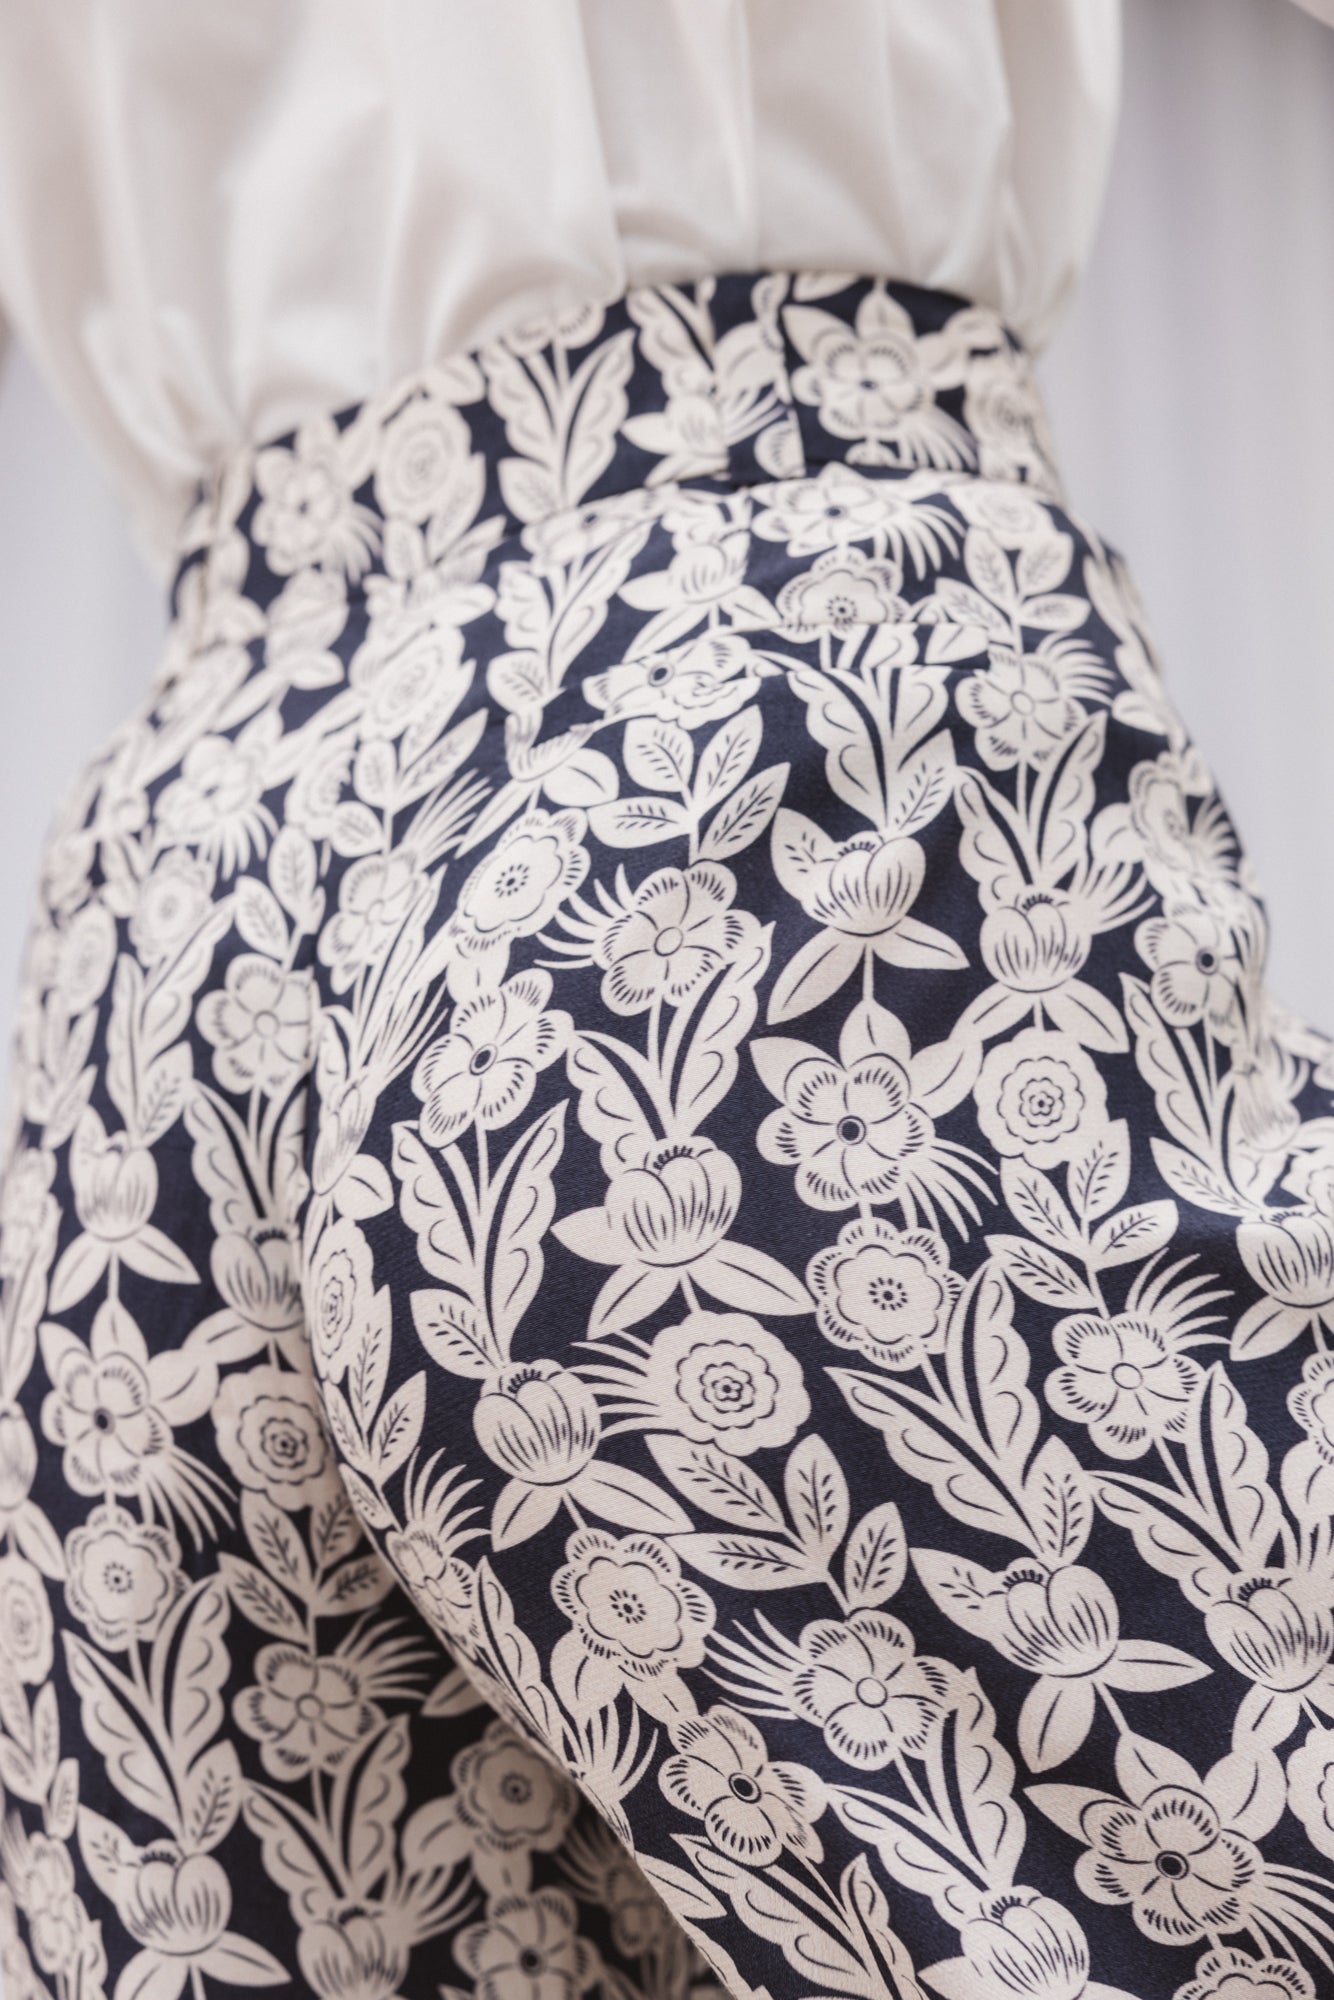 Lavandou pants with floral ornament print